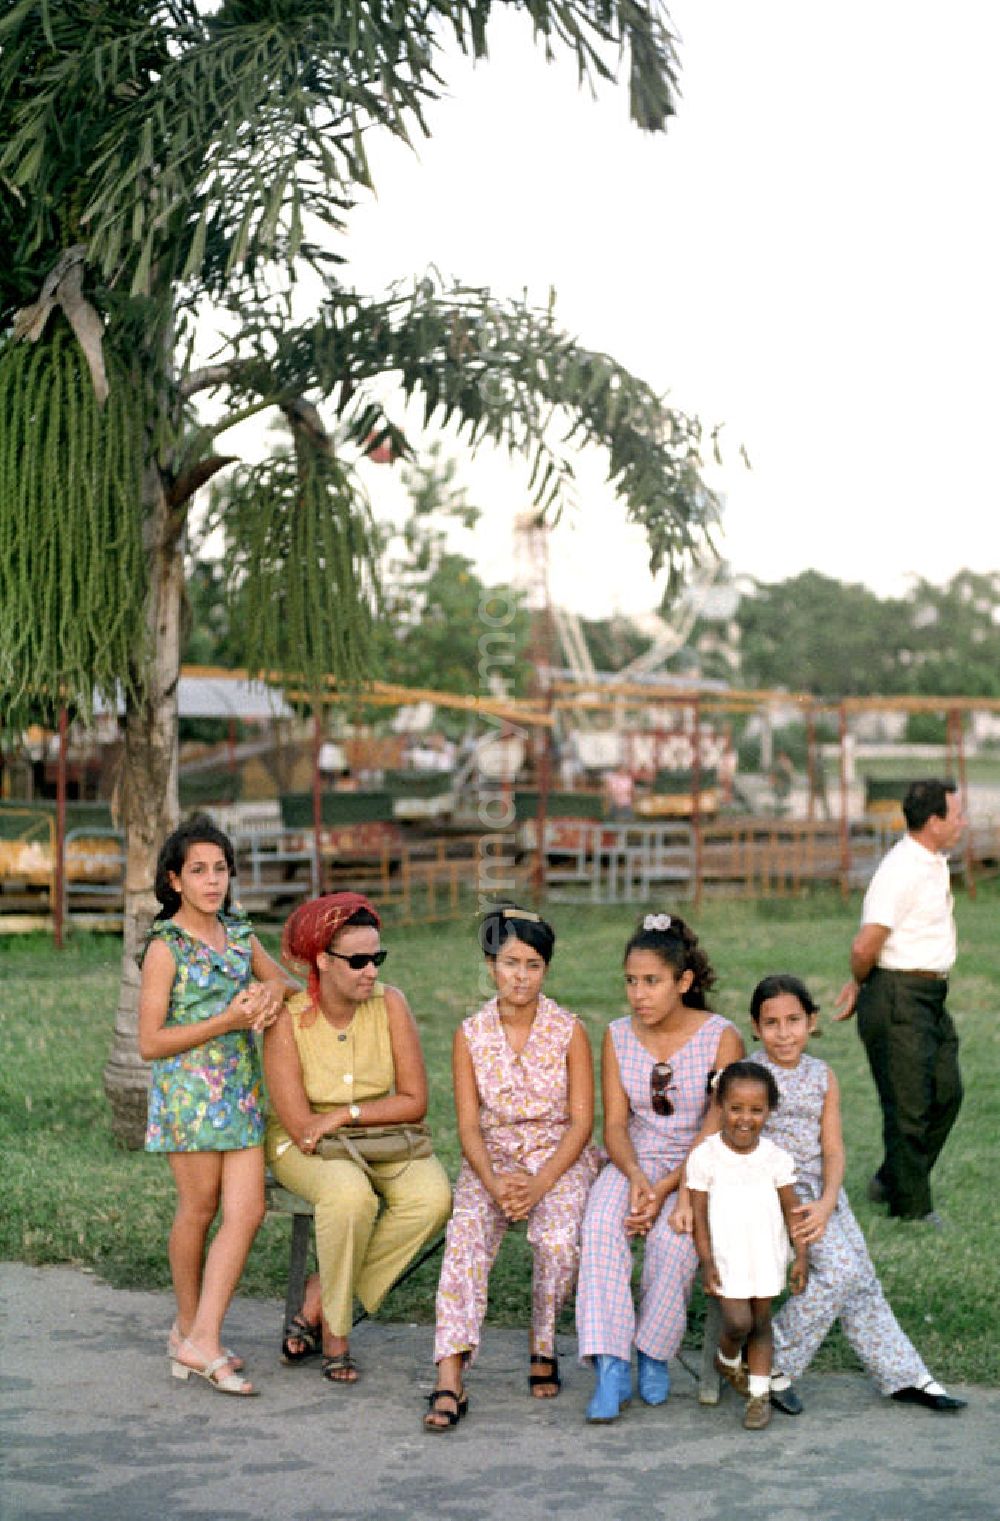 Havanna: Frauen und Kinder sitzen auf einer Bank vor einem kleinen Rummel in Havanna.